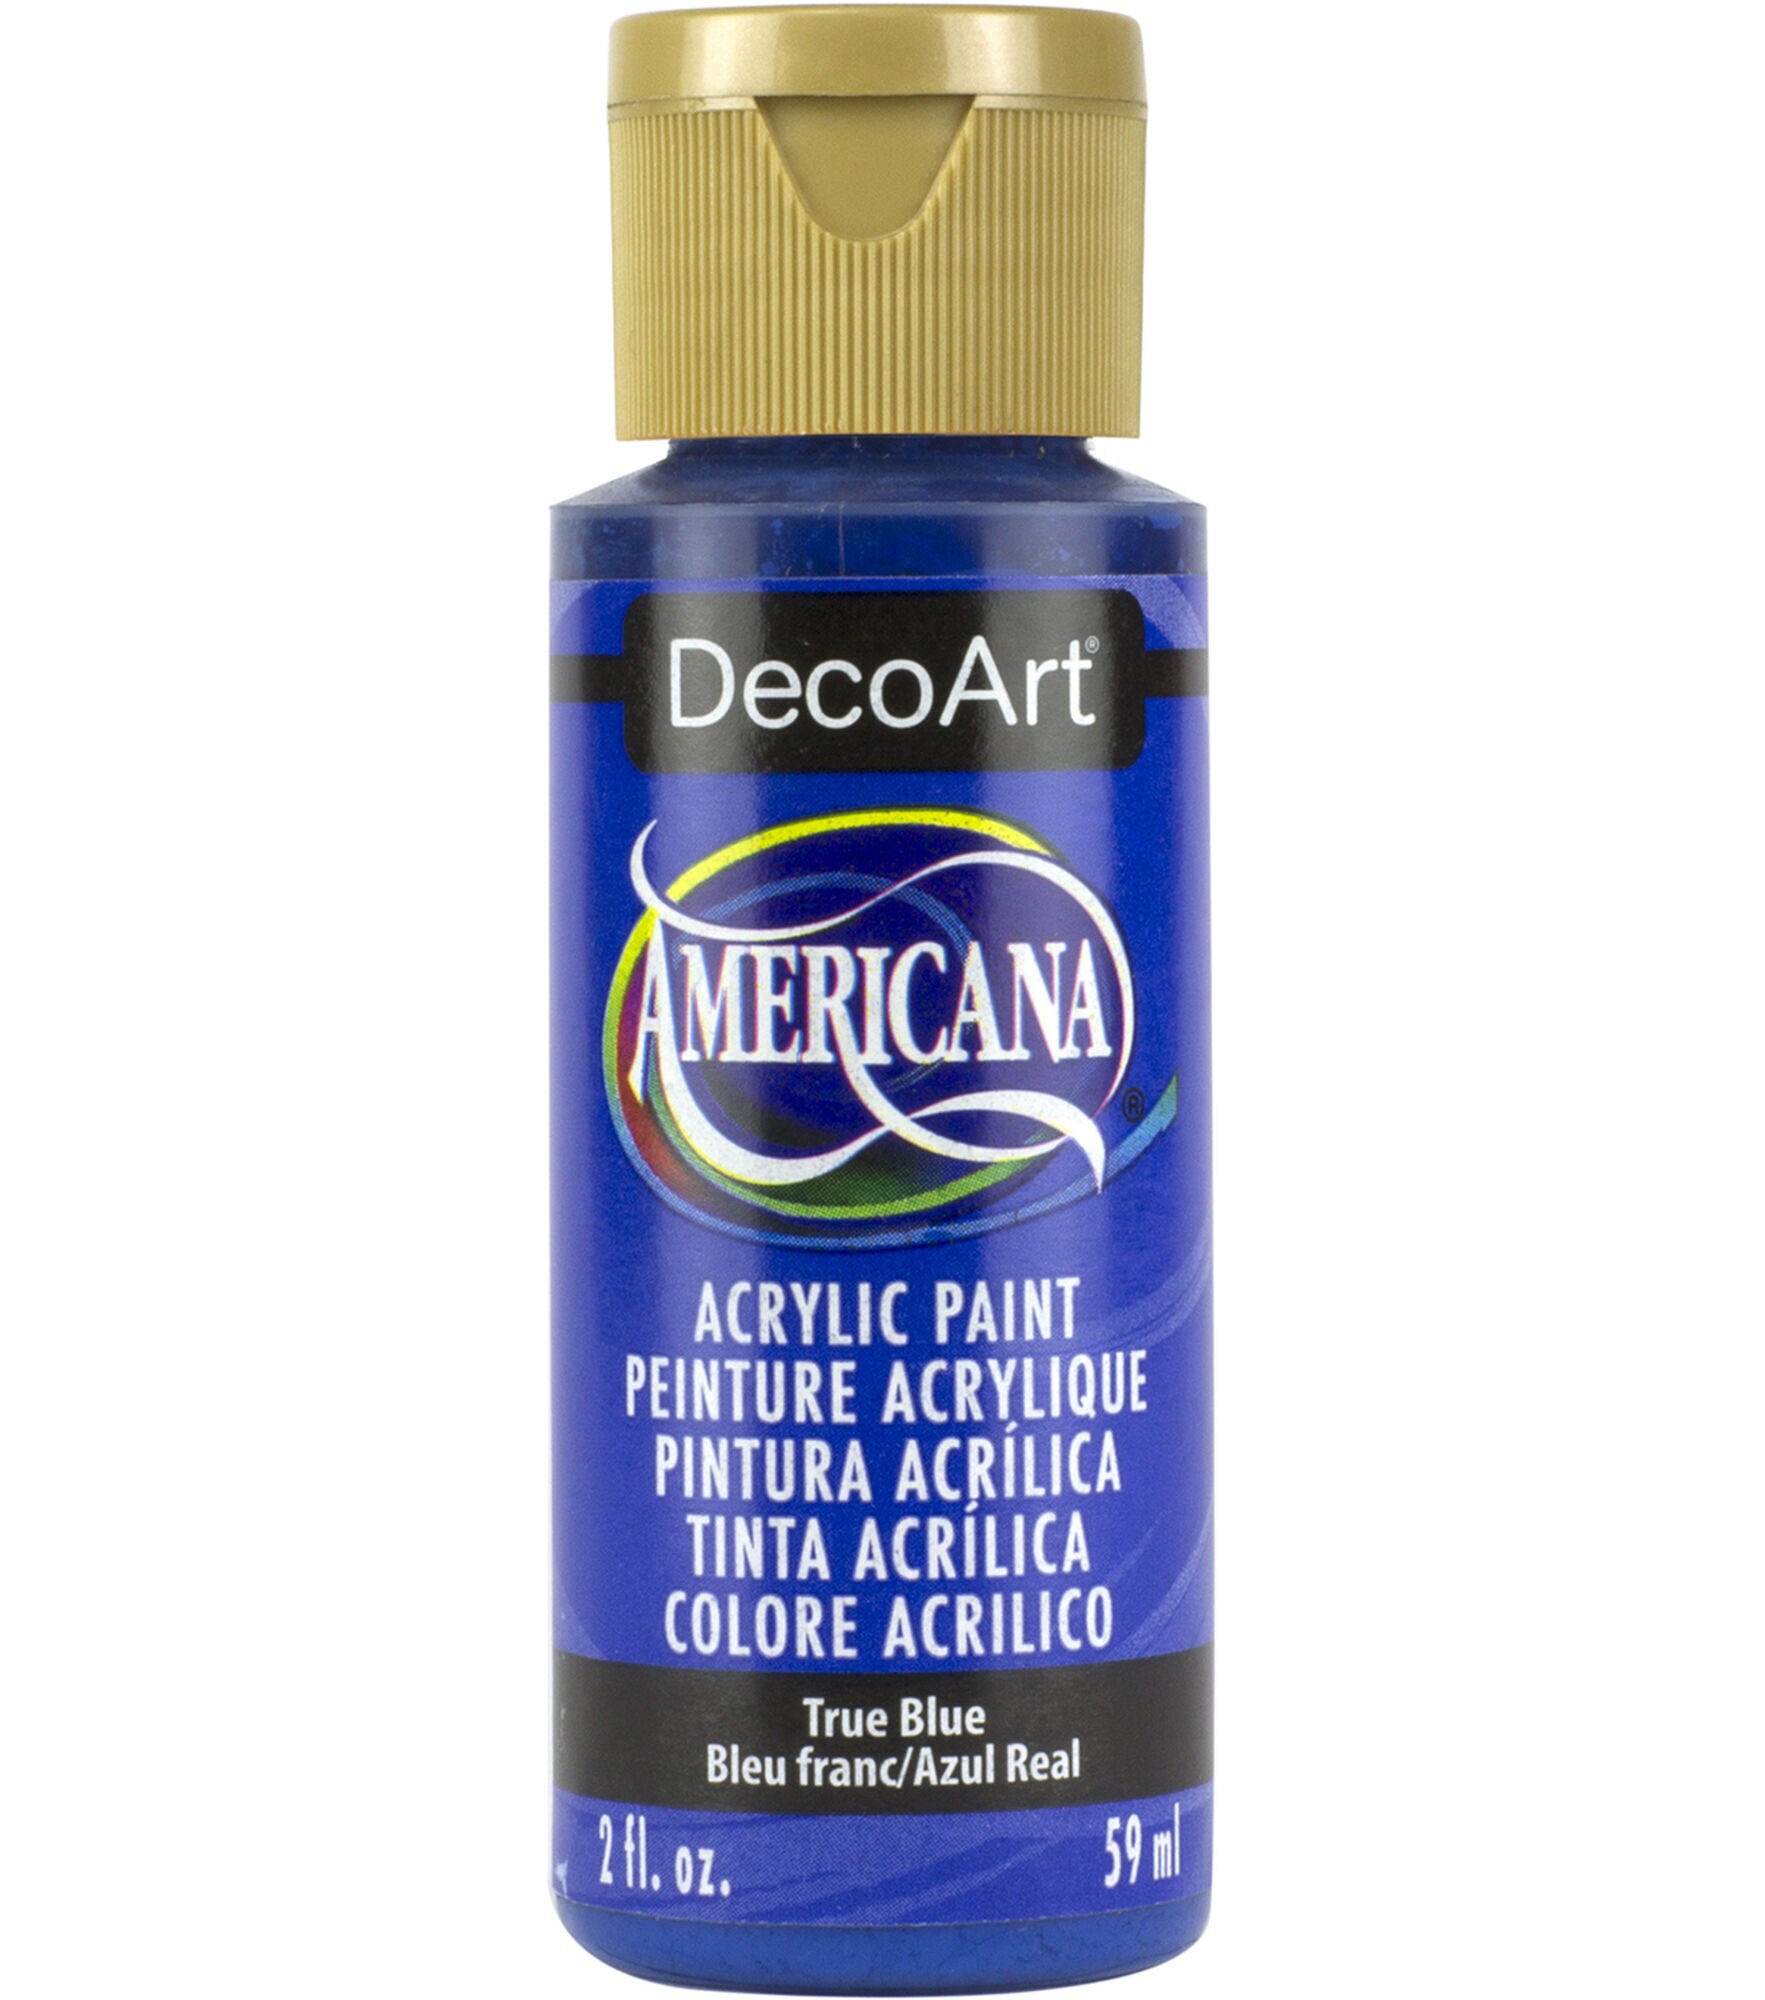 DecoArt Americana Acrylic 2oz Paint, True Blue, hi-res